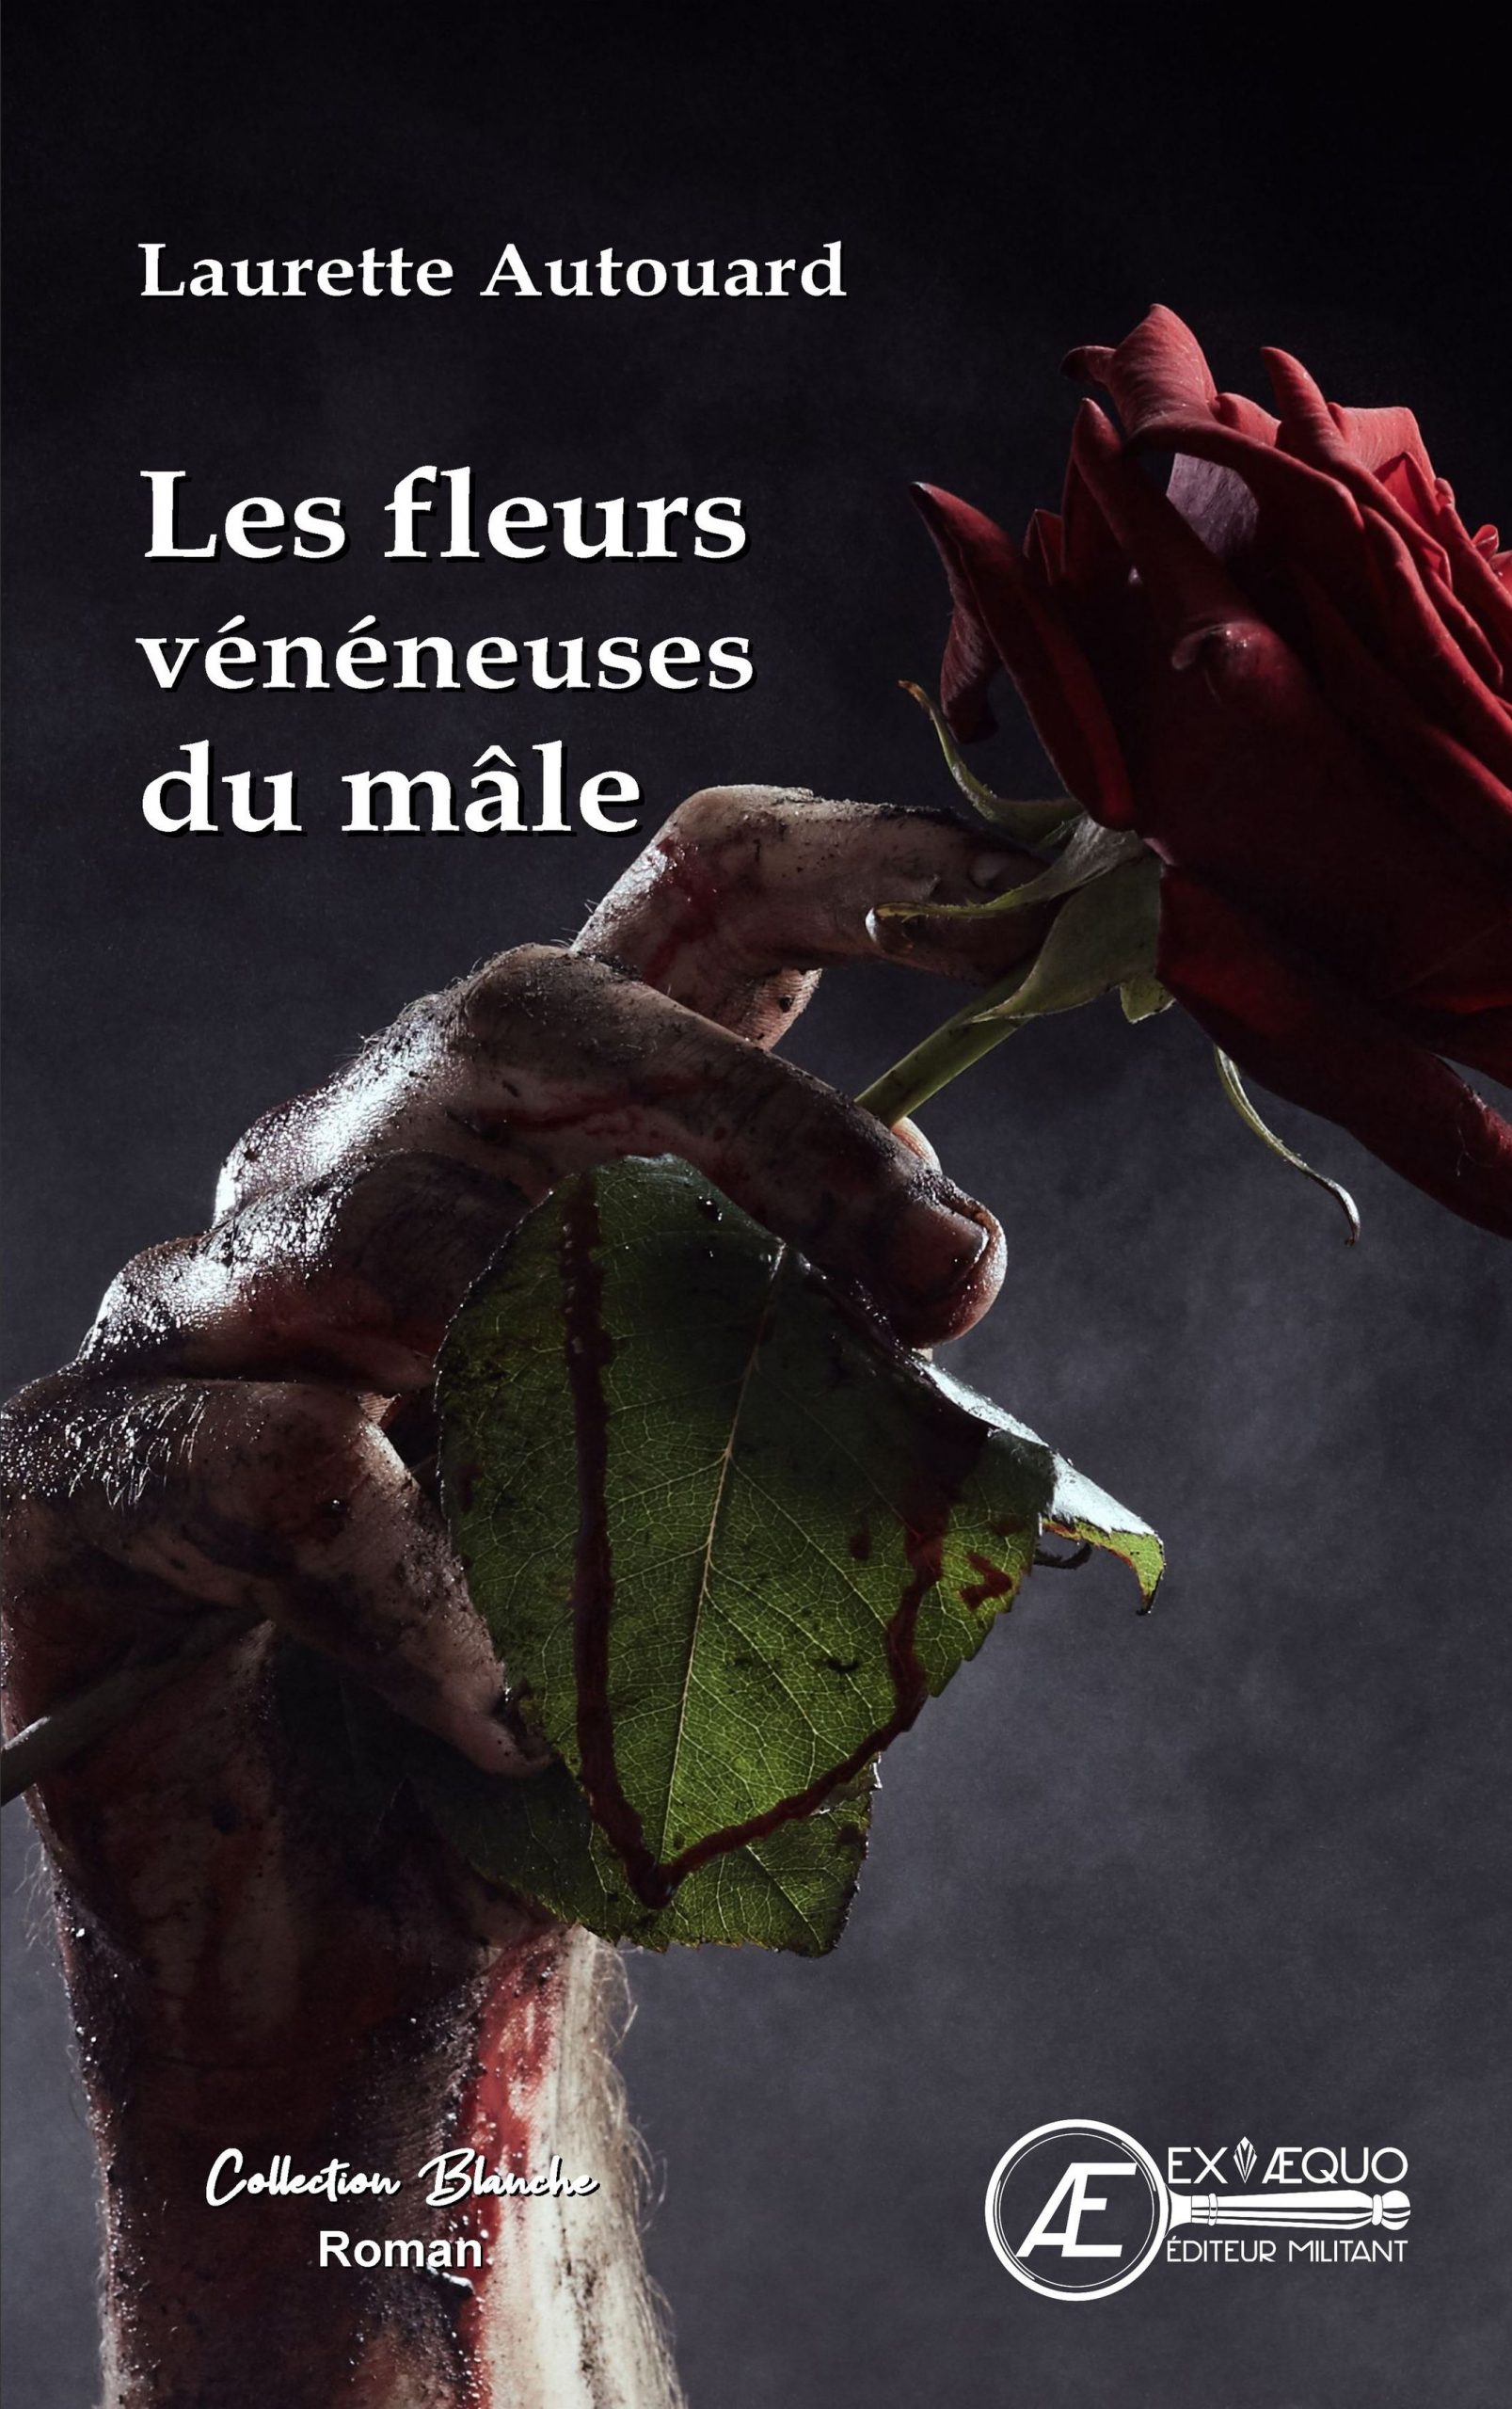 You are currently viewing Les fleurs vénéneuses du mâle, de Laurette Autouard